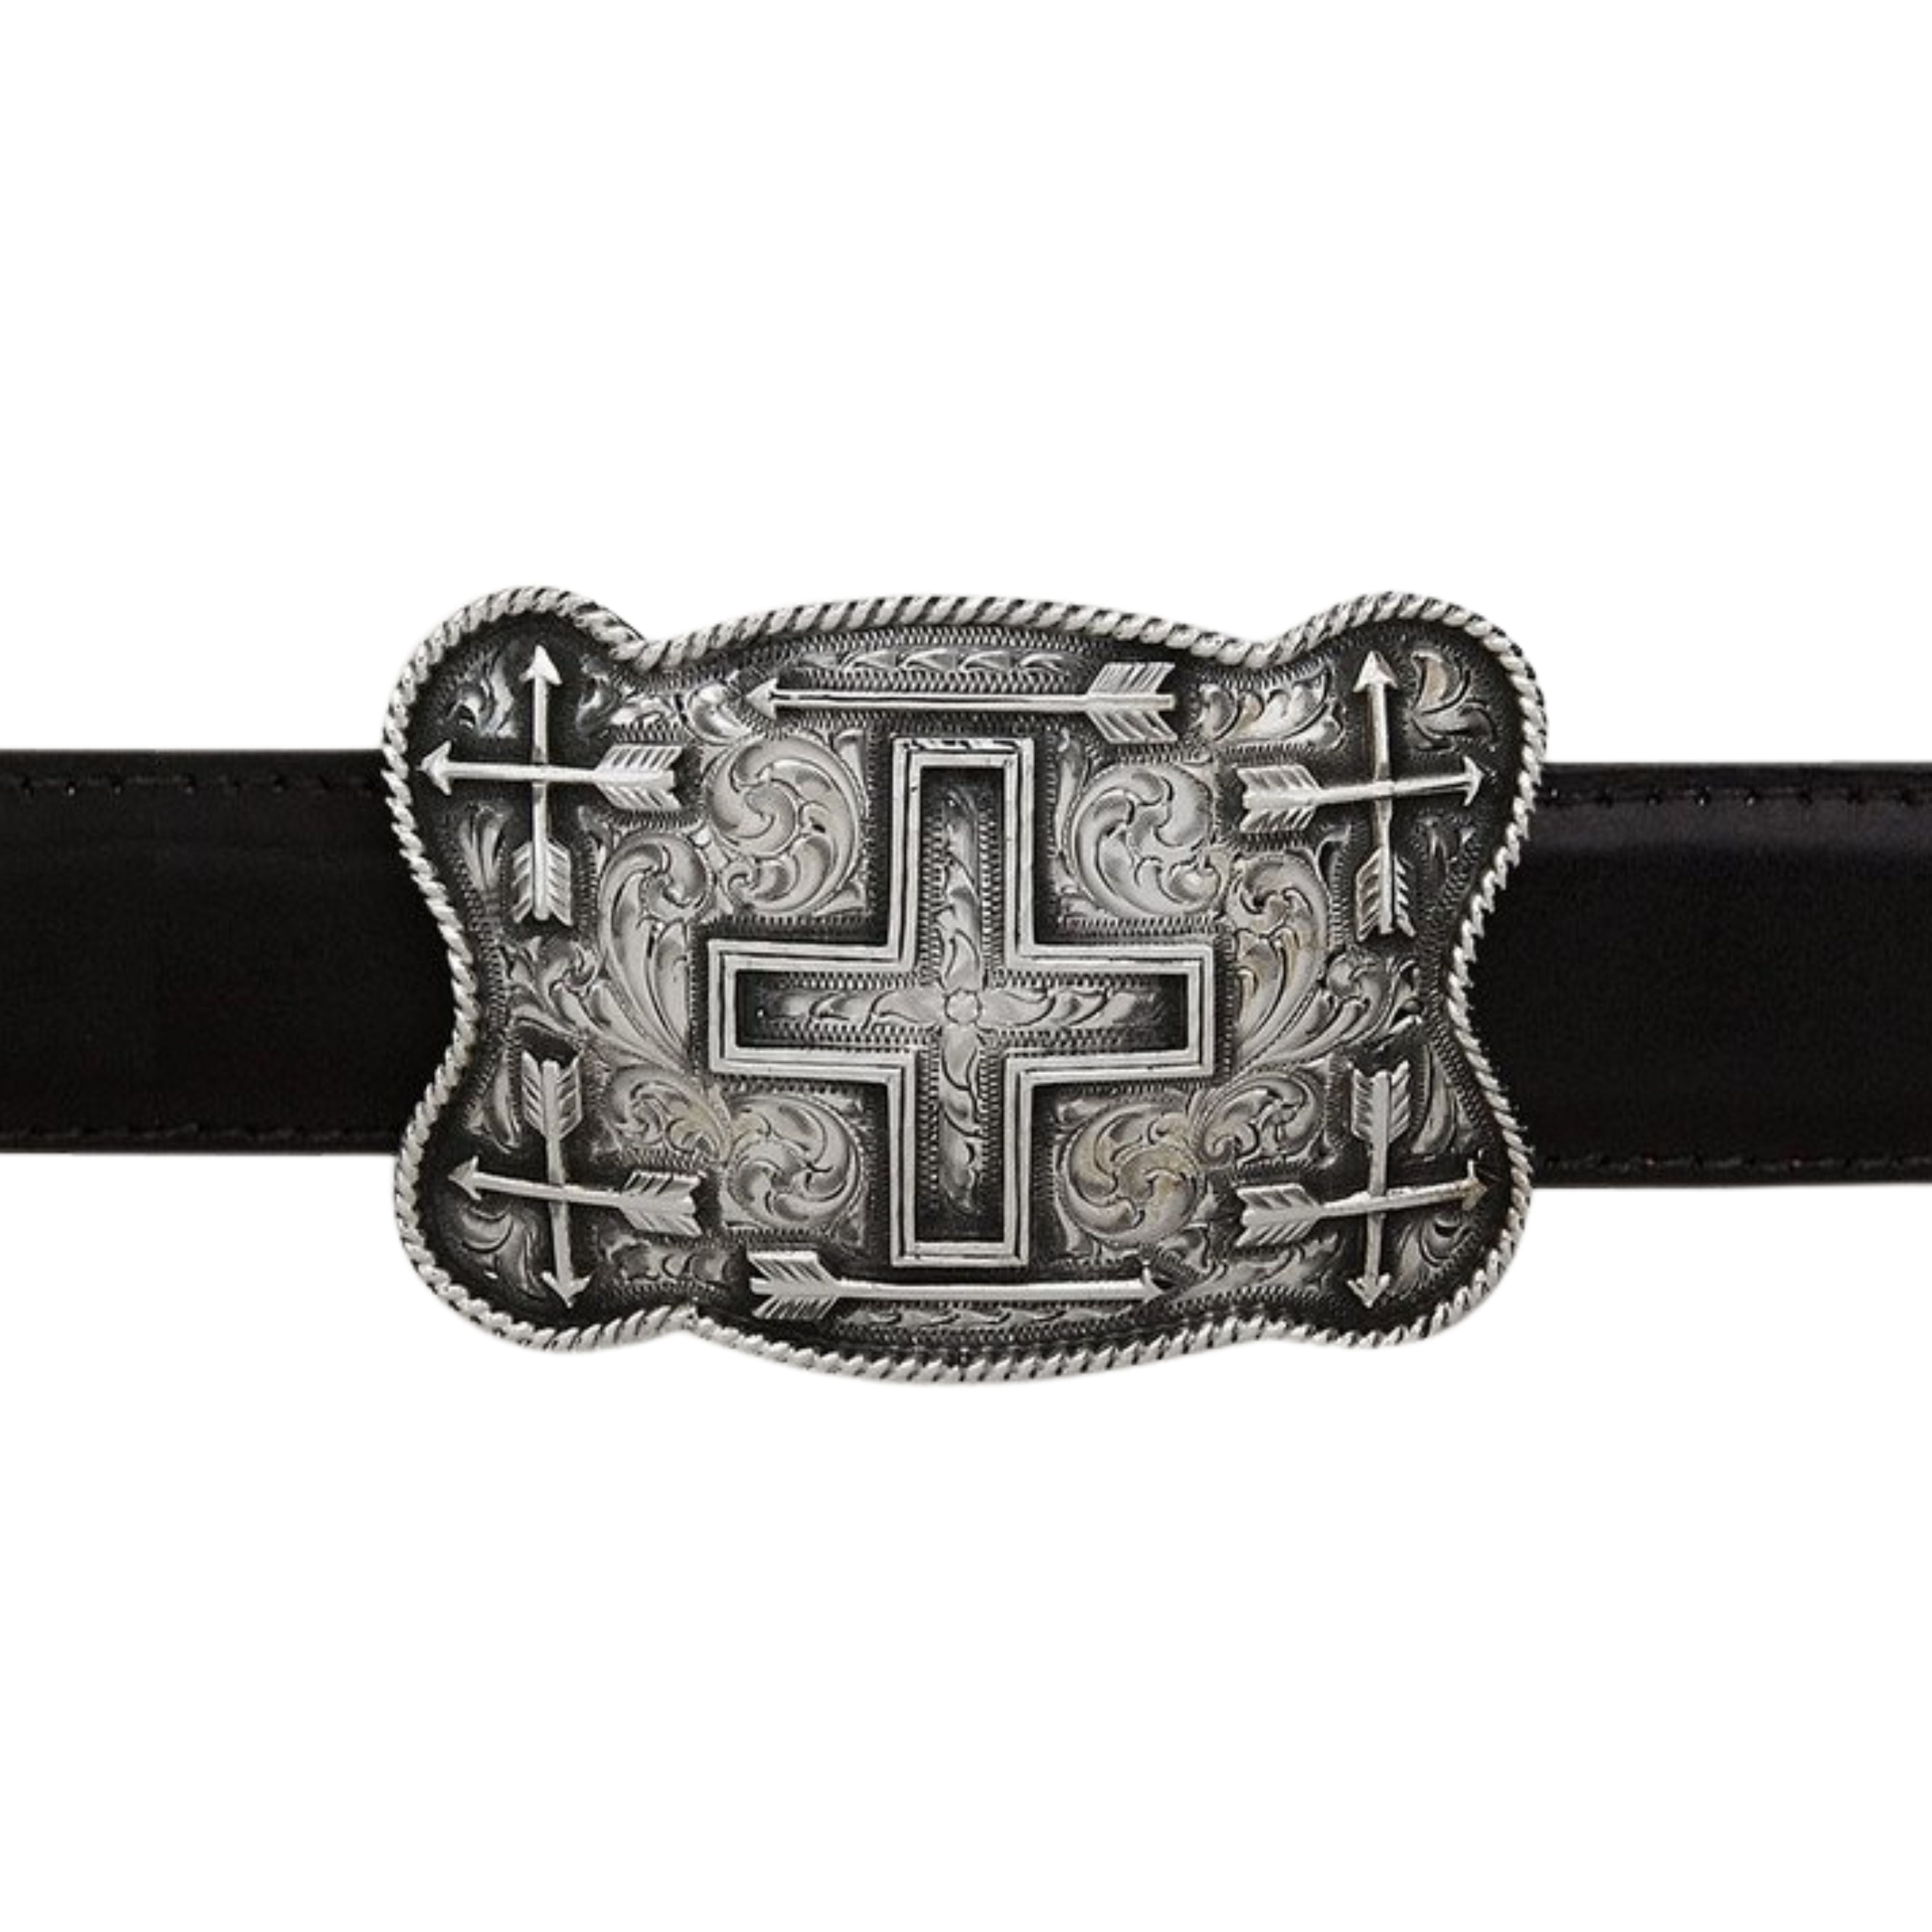 Western Style Star Trophy Belt Buckle